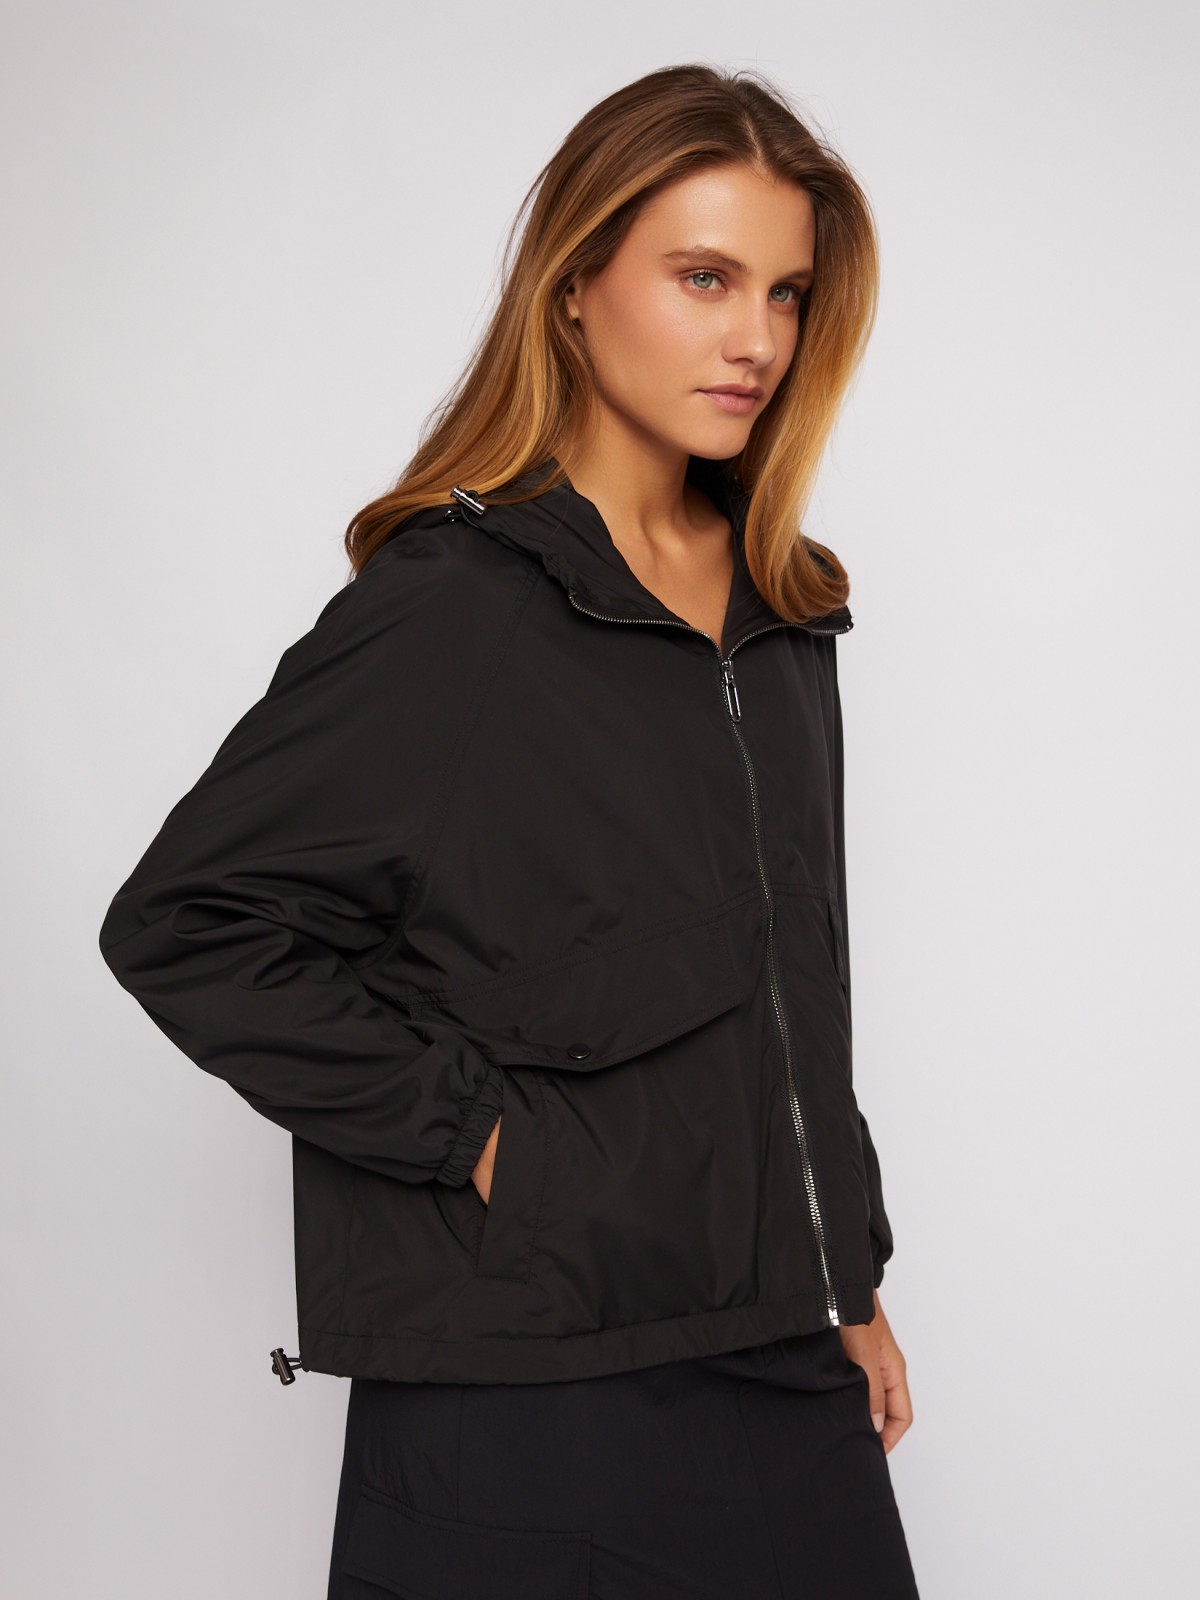 Куртка-ветровка с капюшоном в спортивном стиле zolla 024215612024, цвет черный, размер XS - фото 3